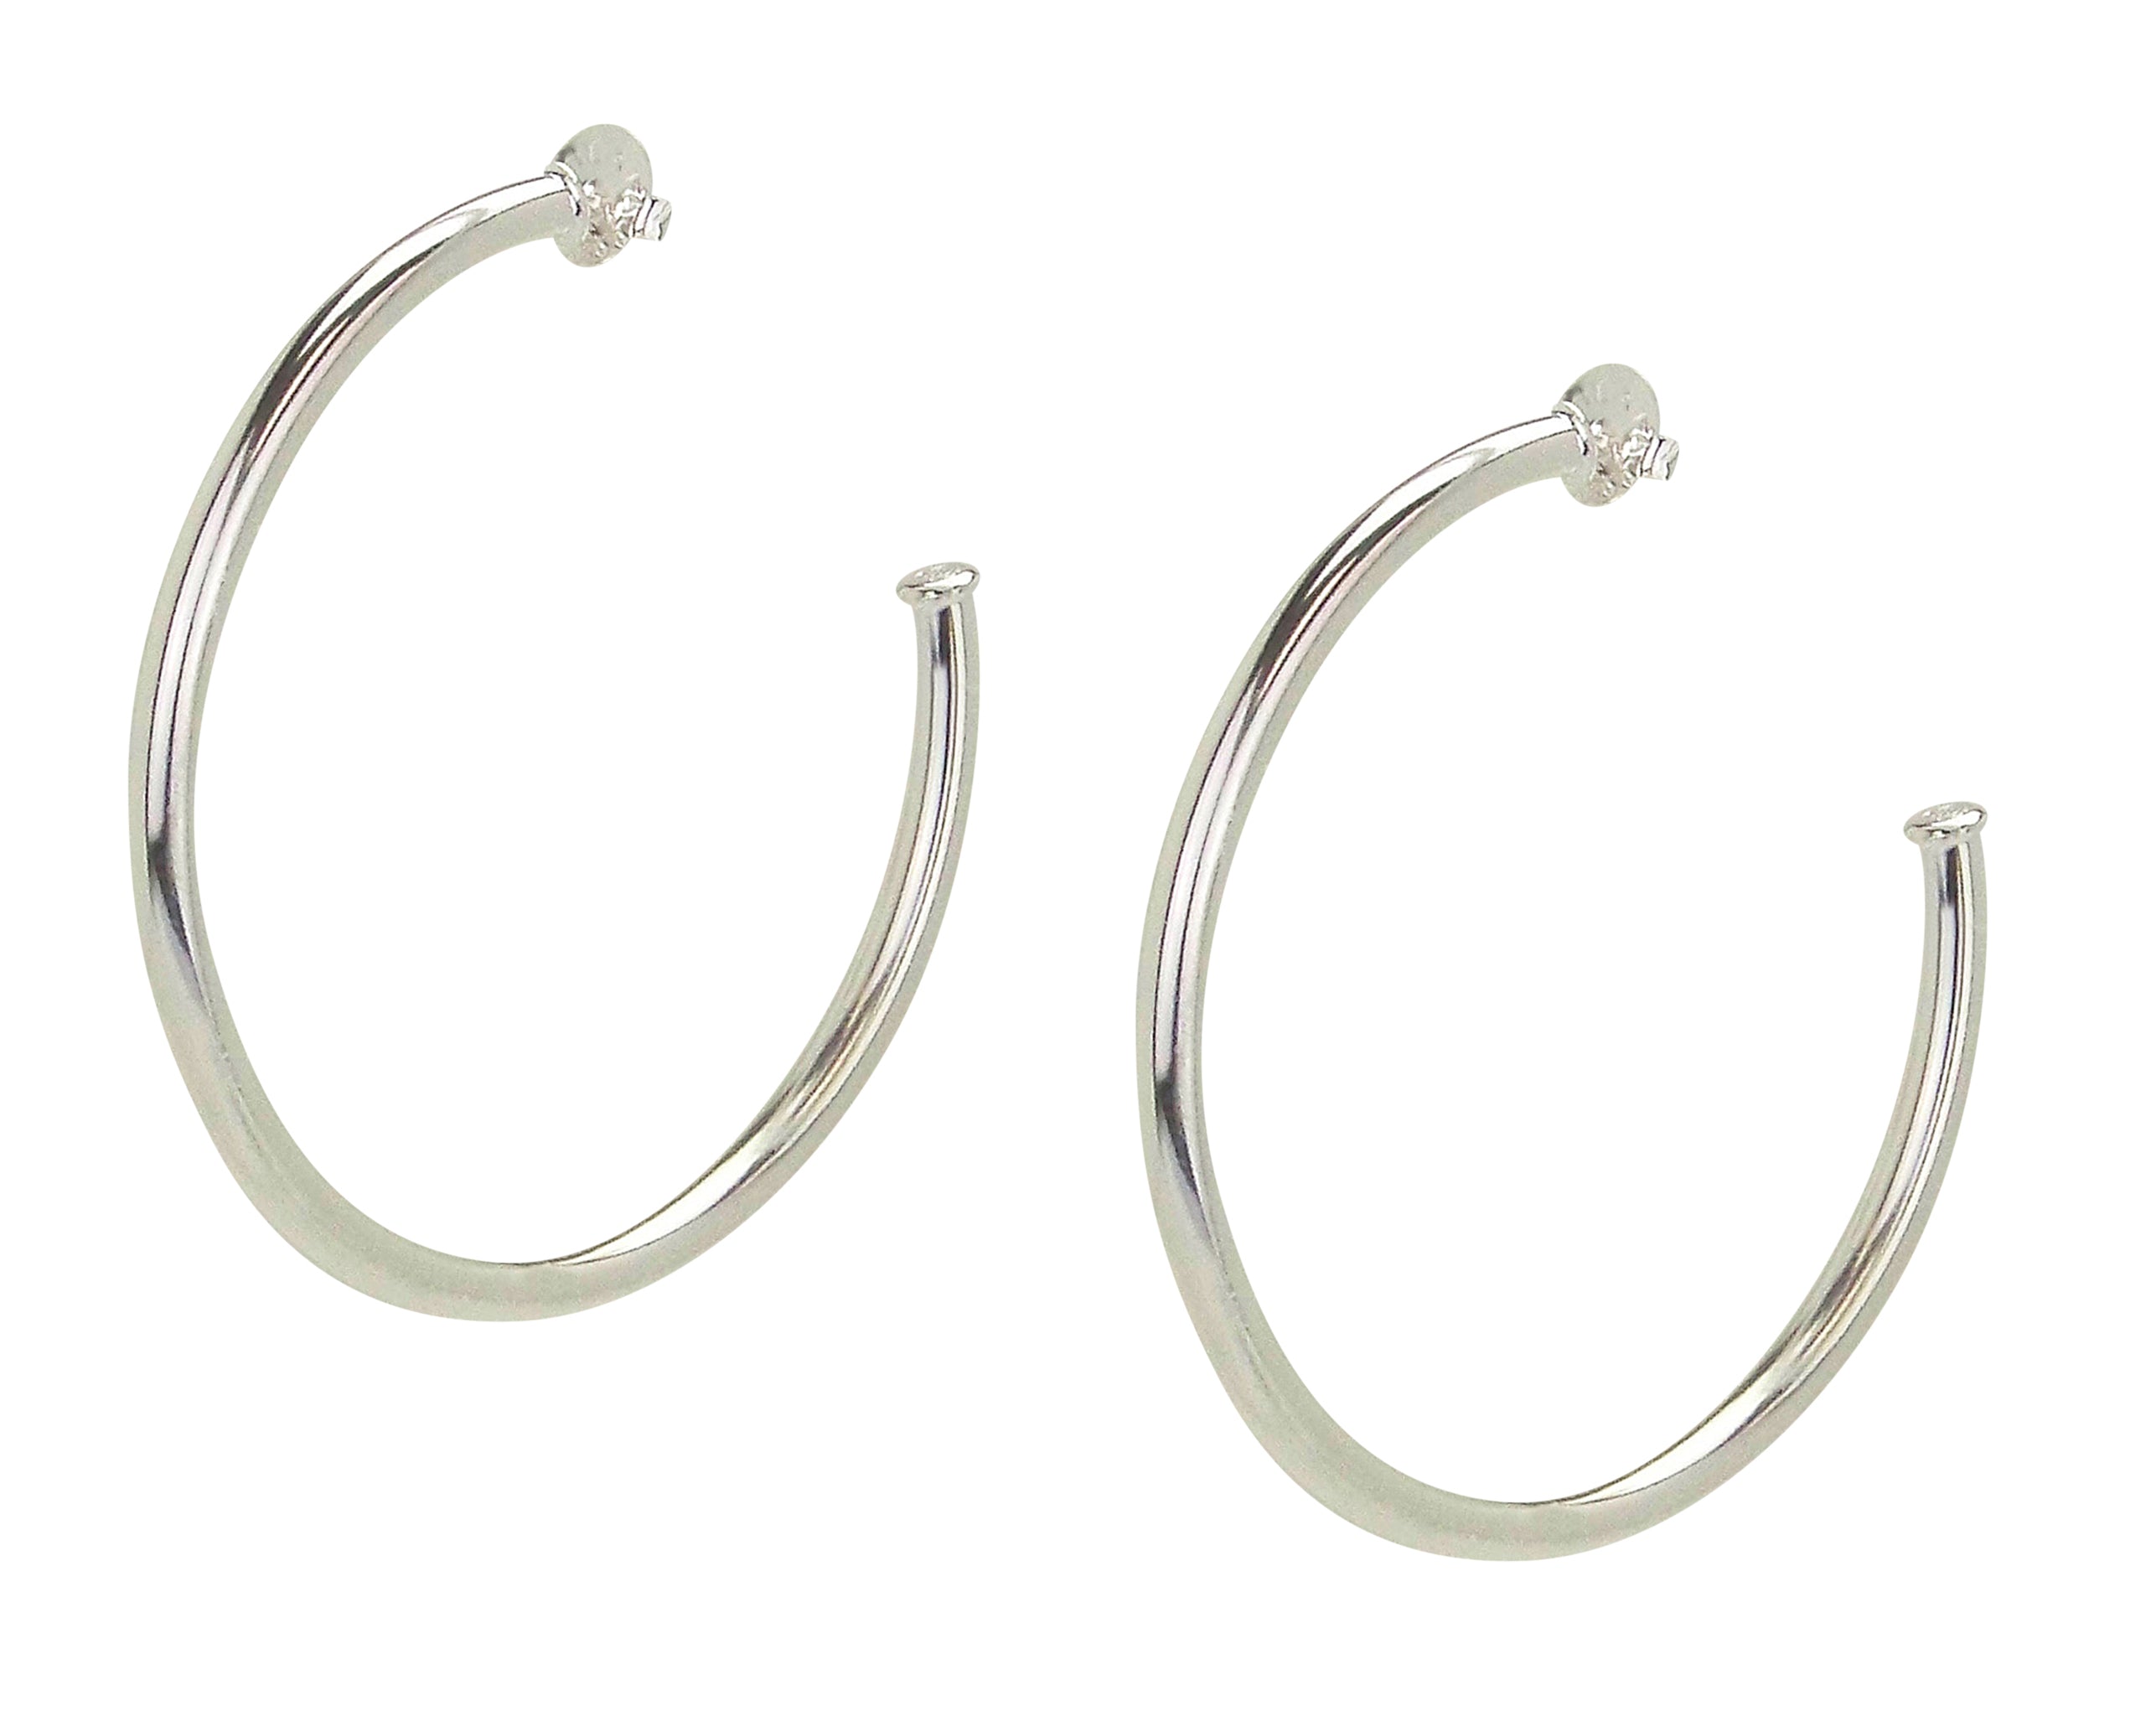 Pair of Sheila Fajl Everybody's Favorite Hoop Earrings in Polished Silver